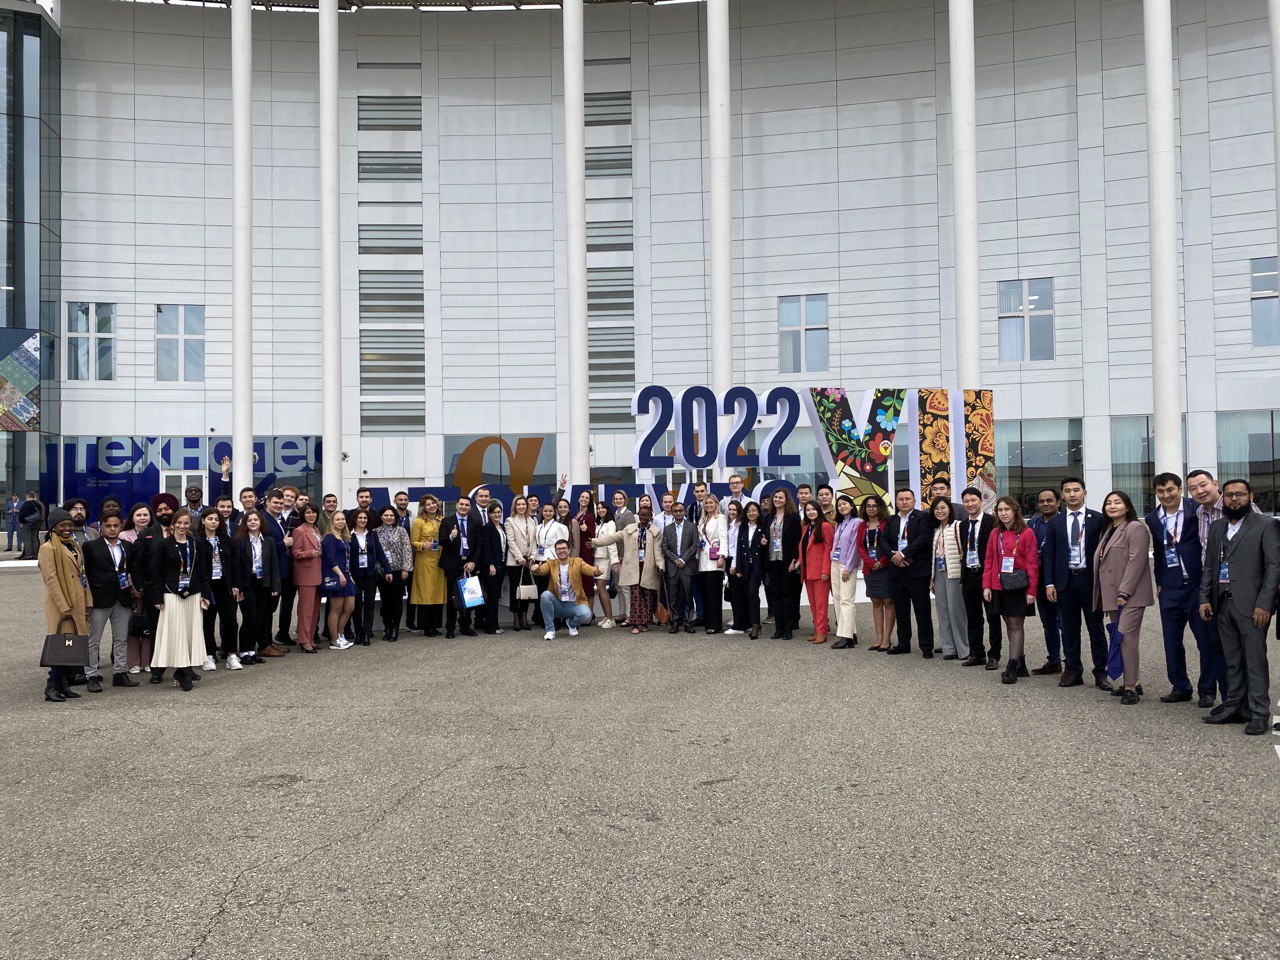 Молодежь БРИКС и стран-партнеров запустила Global Partners Network на полях Международного форума «АТОМЭКСПО-2022»